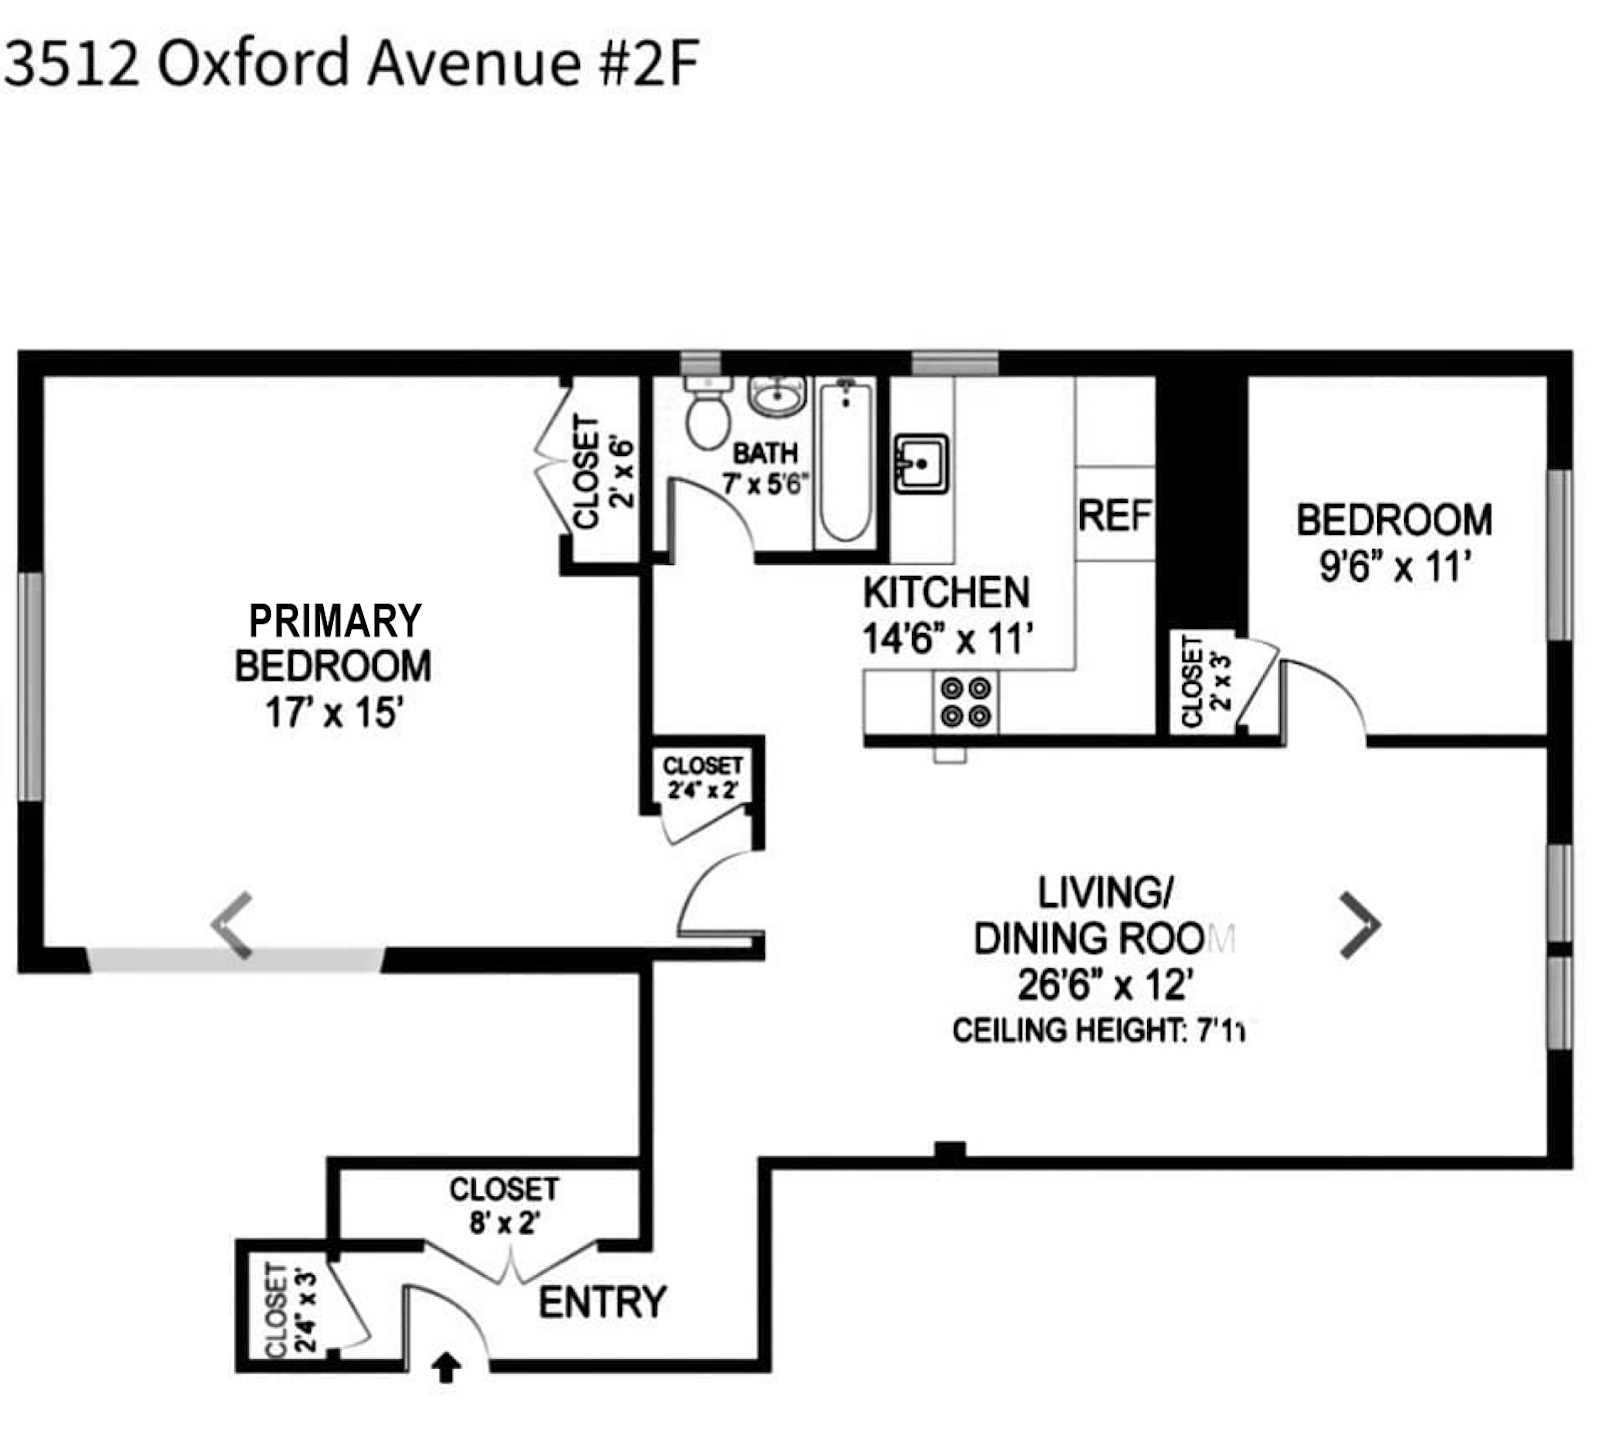 Floorplan for 3512 Oxford Avenue, 2F